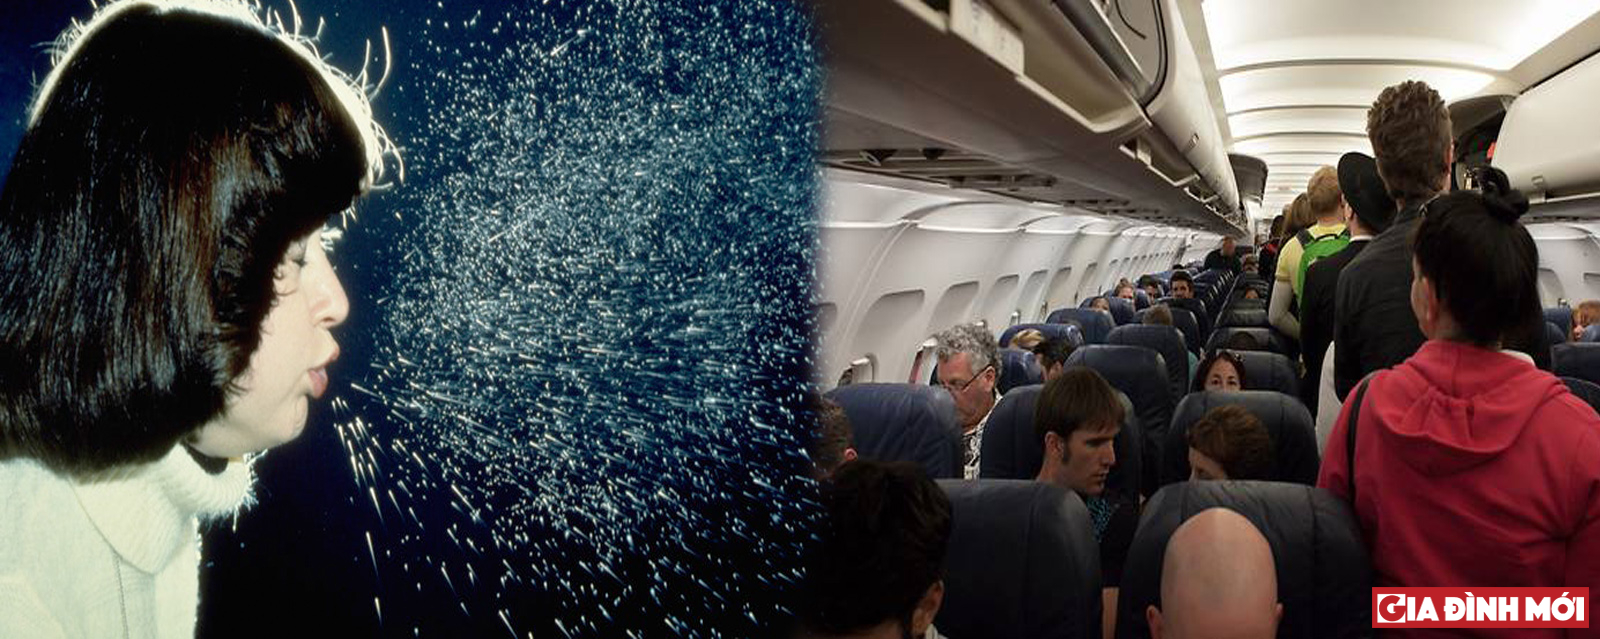 Trên máy bay, một người bị cúm có thể lây bệnh cho những người ngồi trong bán kính 1,8 gần họ